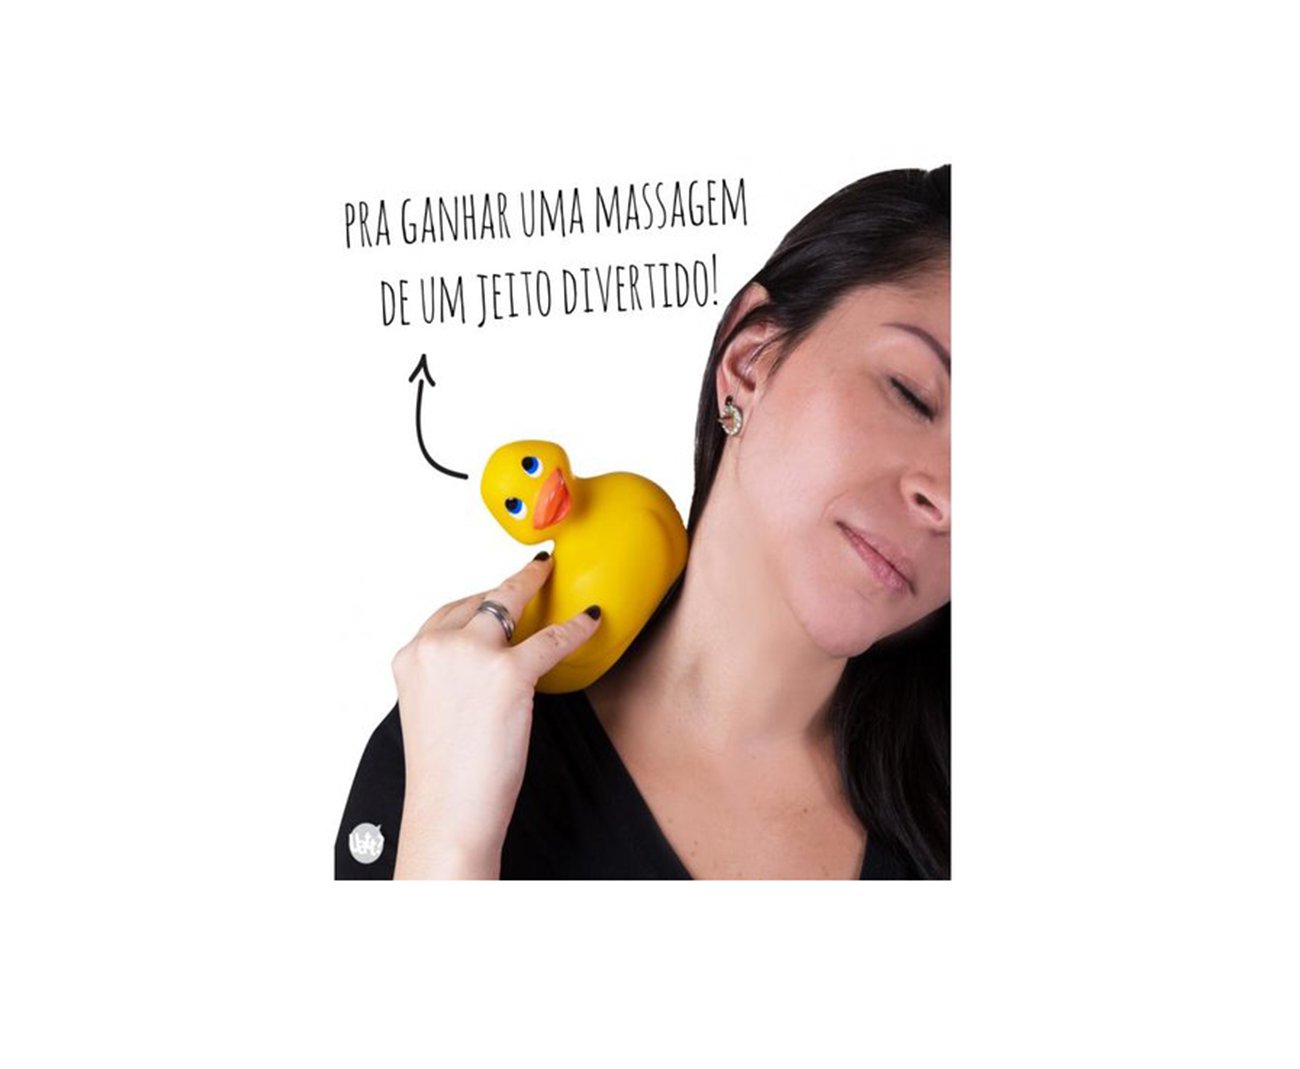 Quack Massagem - Amarelo - Uatt